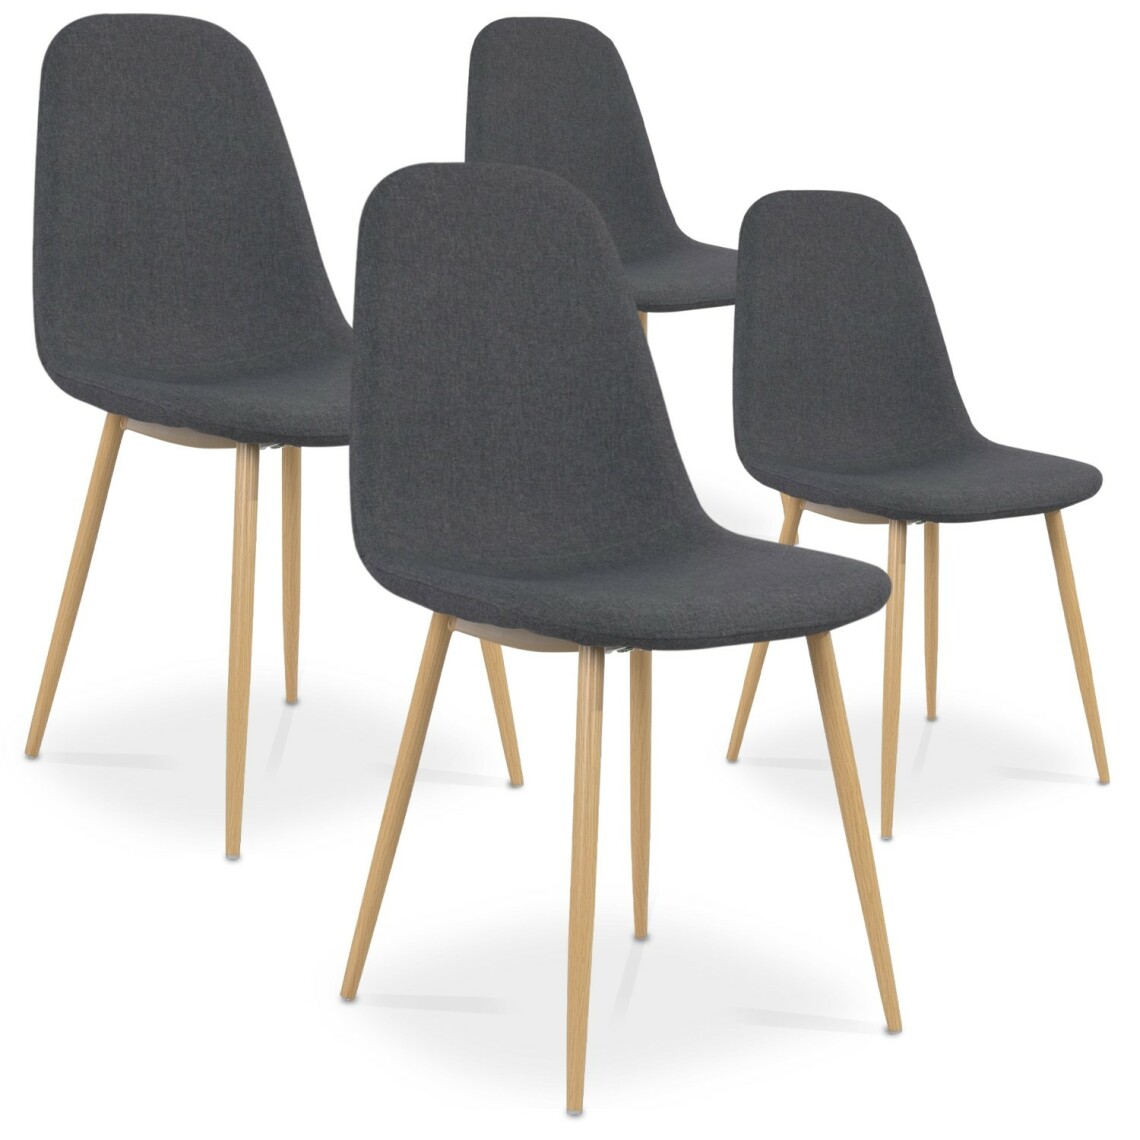 marque generique - Lot de 4 chaises scandinaves Bali tissu Gris - Chaises